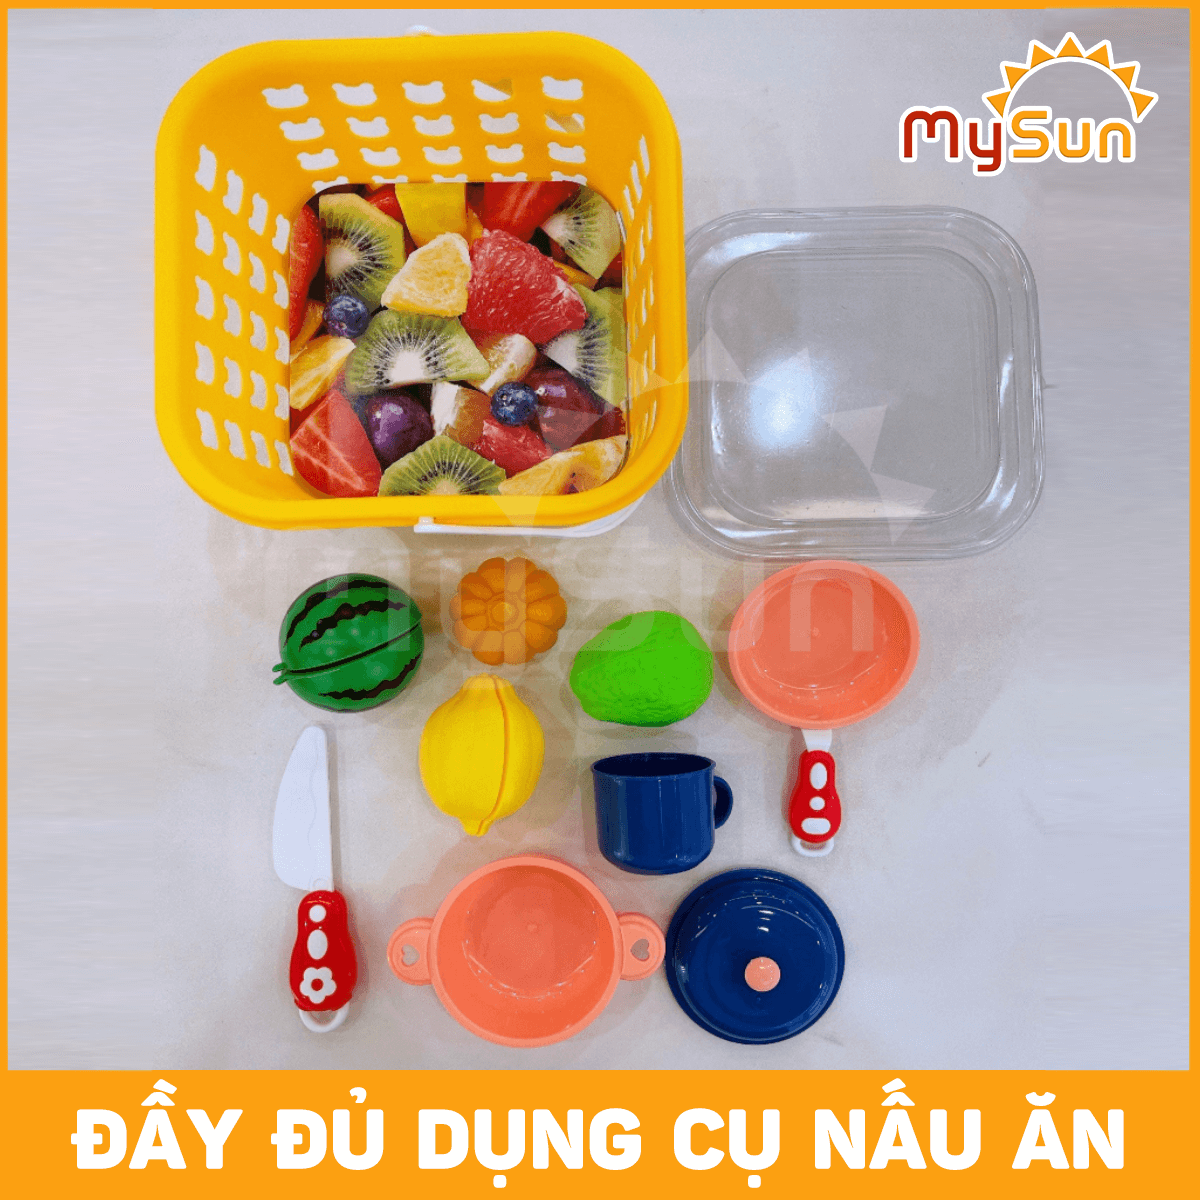 Bộ đồ chơi nấu ăn nhà bếp mini bằng nhựa giá rẻ cho bé gái chơi đồ hàng - MySun